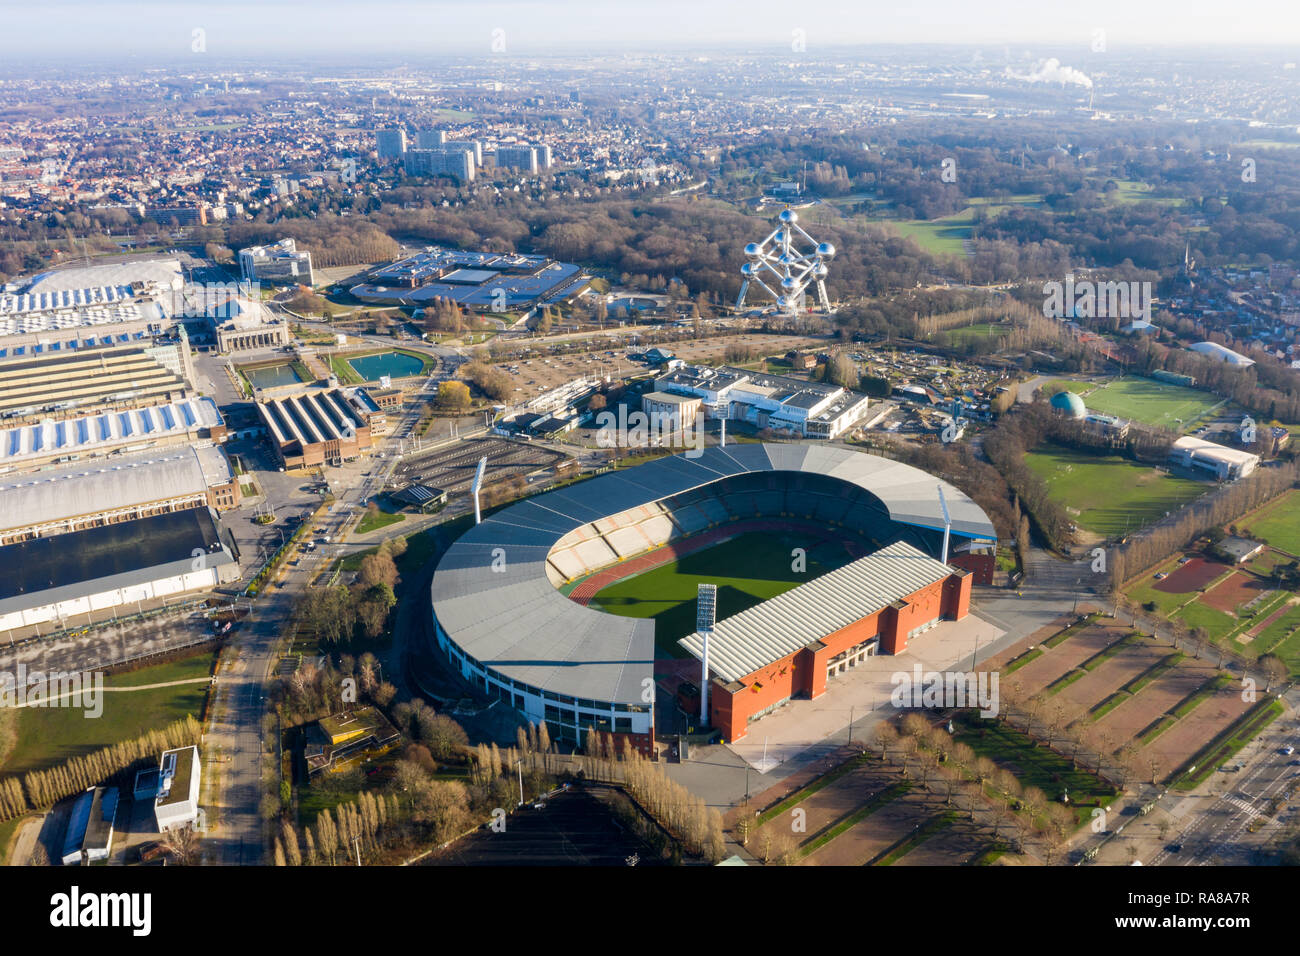 King Baudouin nazionali di calcio e Rugby Stadium vista aerea feat. L'Atomium edificio nel centro città di Bruxelles, Belgio Foto Stock